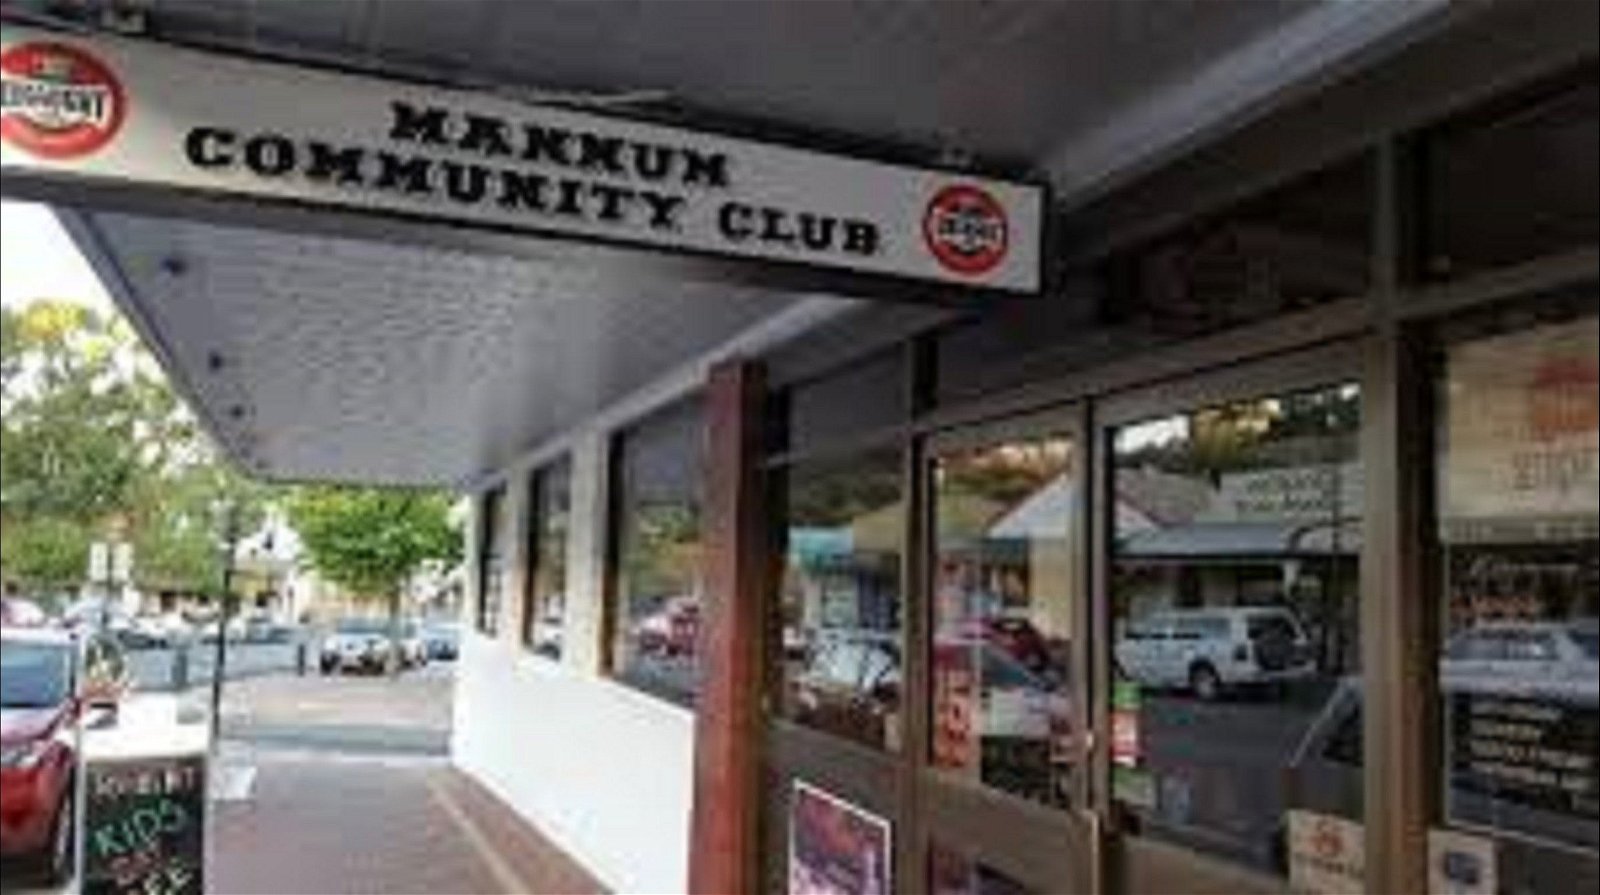 Mannum Community Club - Tourism TAS